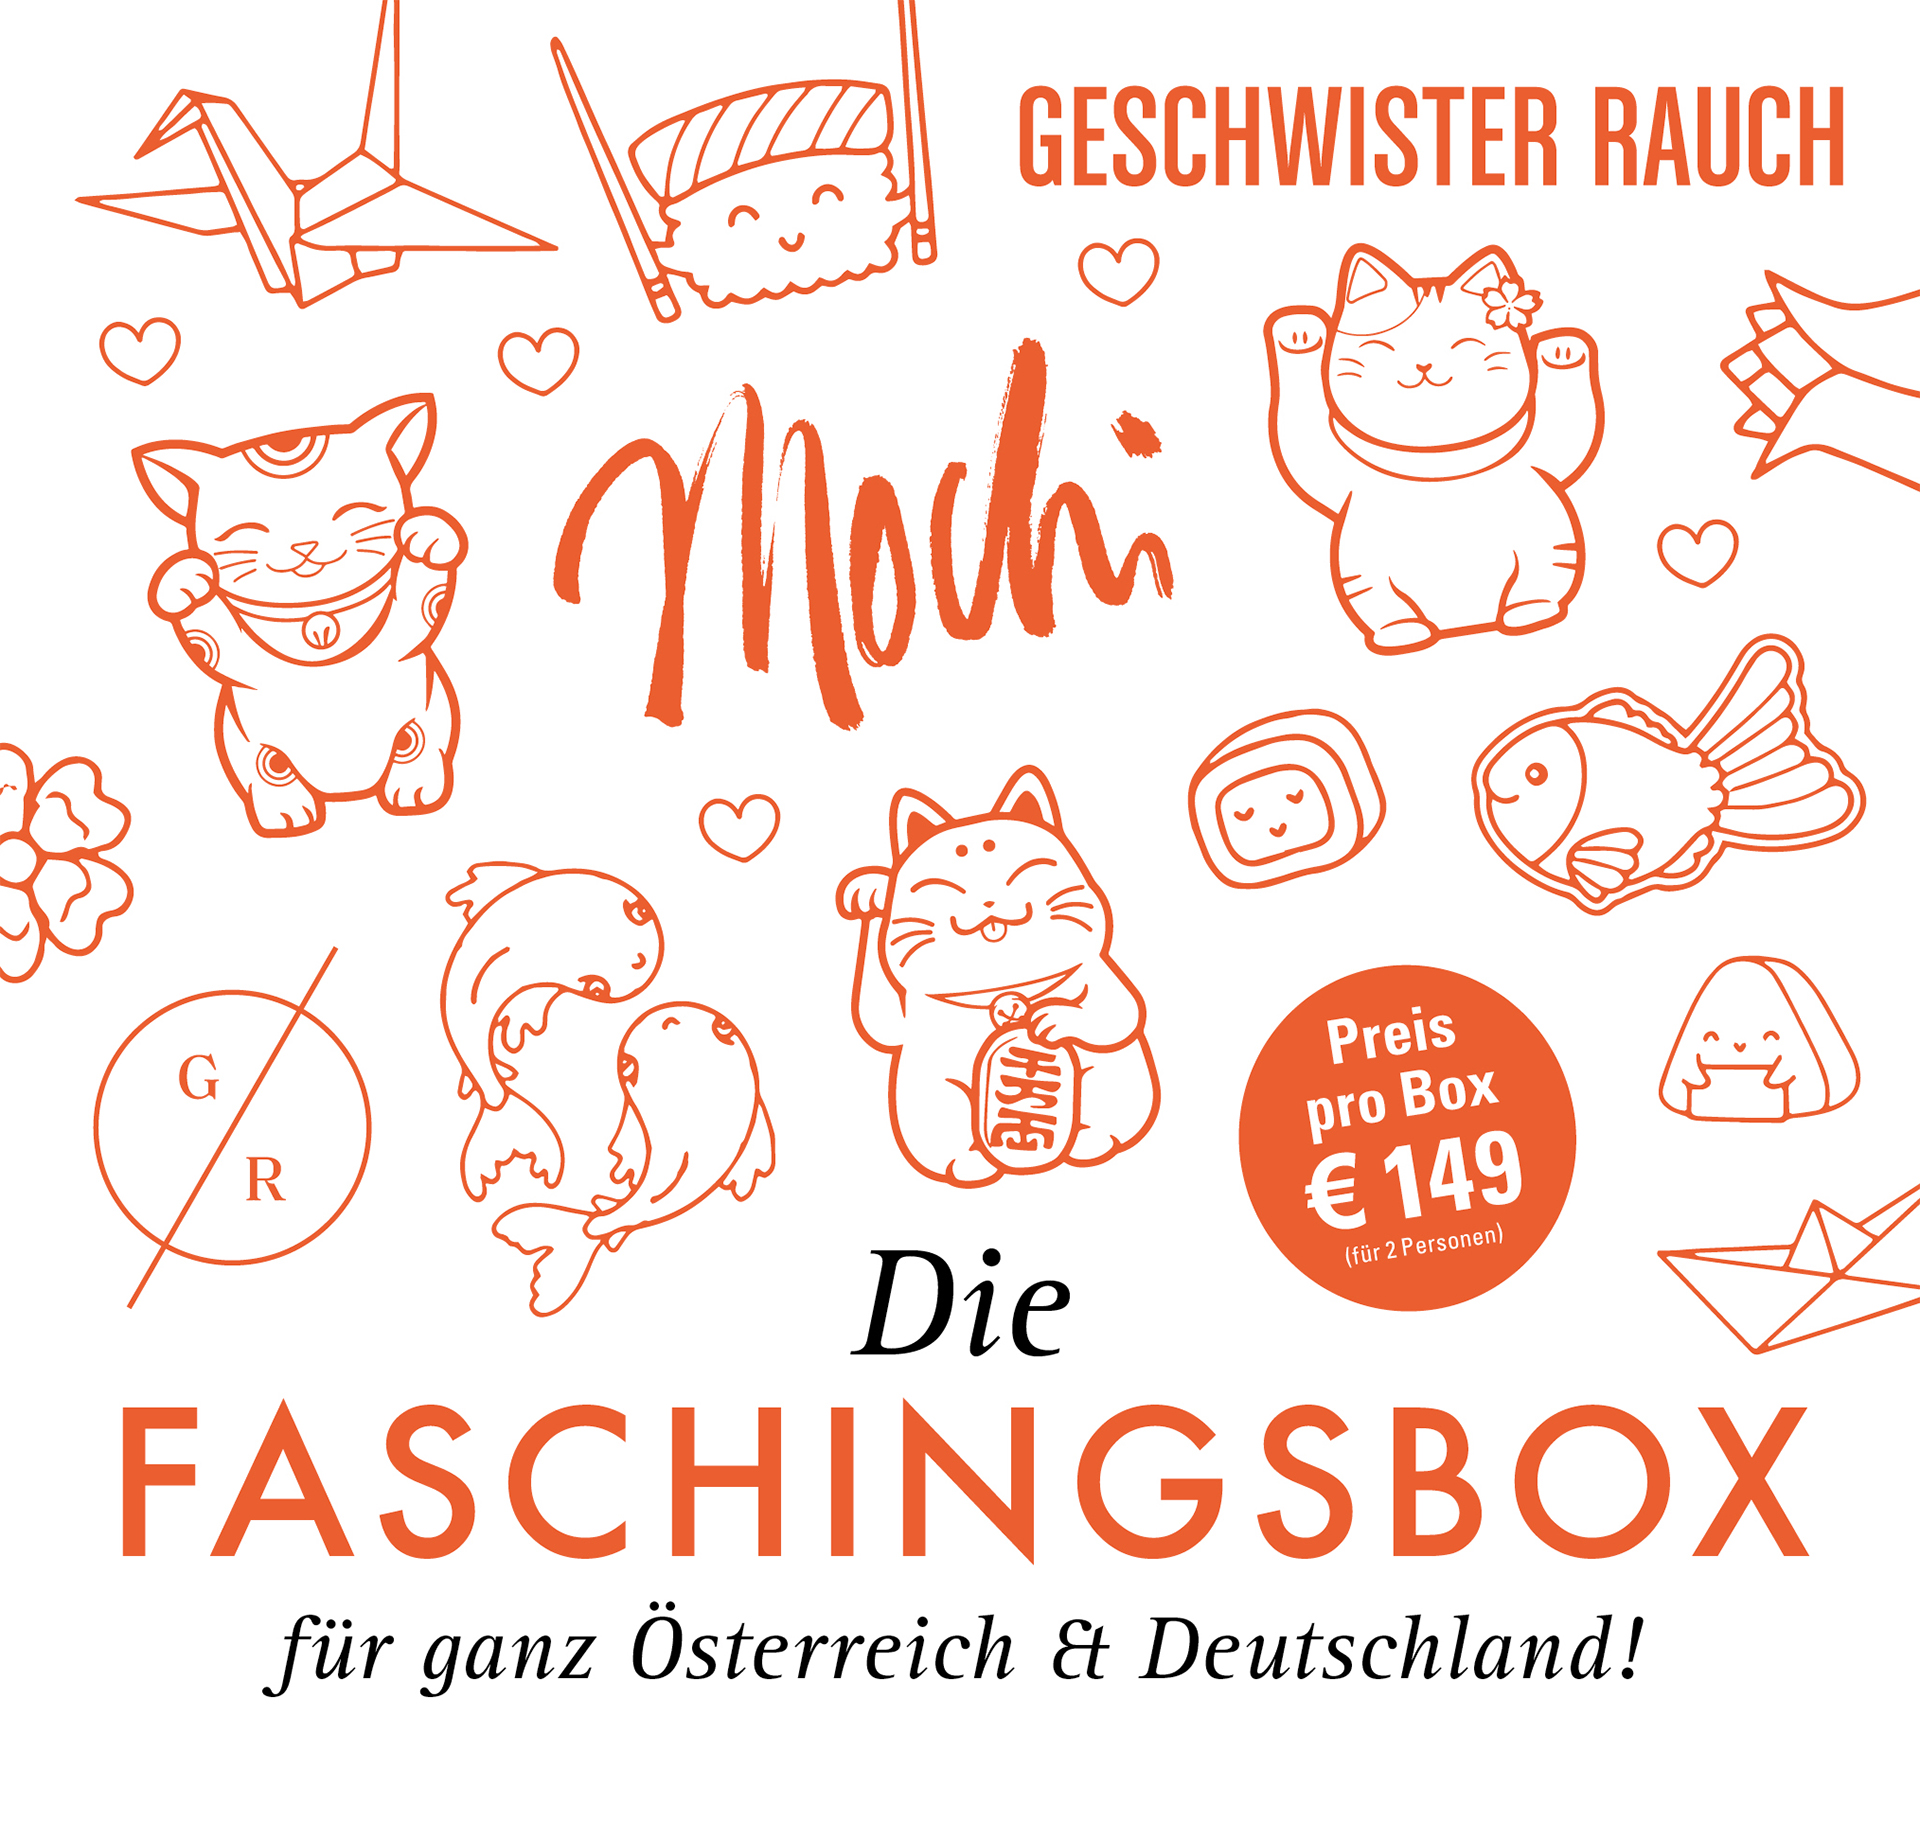 Die Faschingstbox für ganz Österreich & Deutschland - Preis pro Box € 149 (2 Personen)